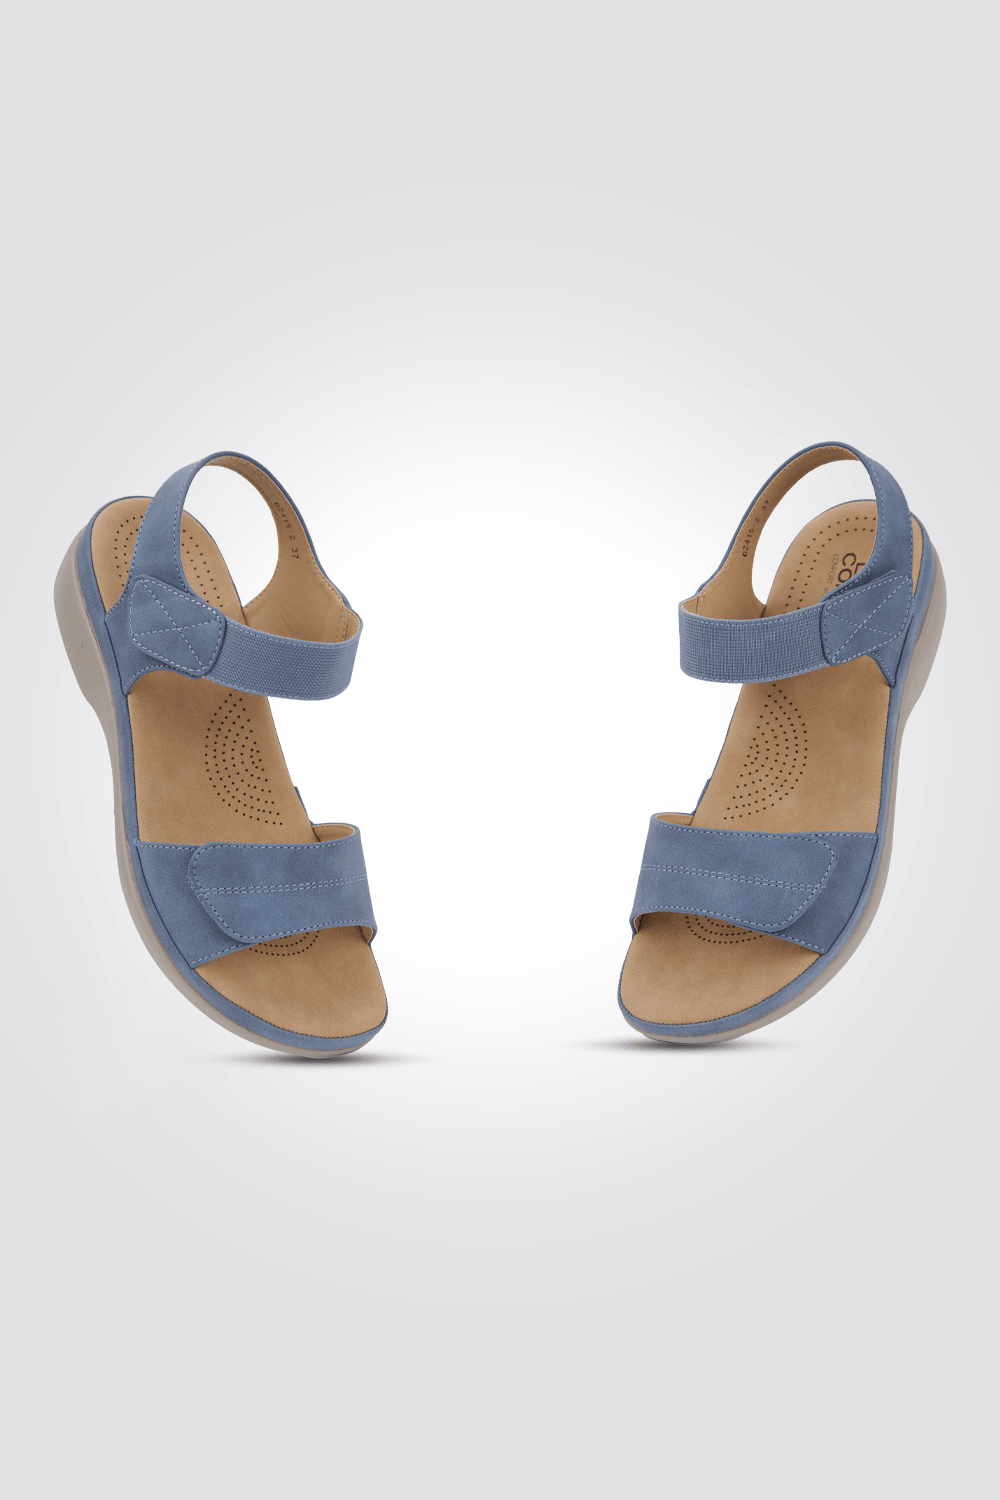 סנדל לנשים בצבע ג'ינס - MASHBIR//365